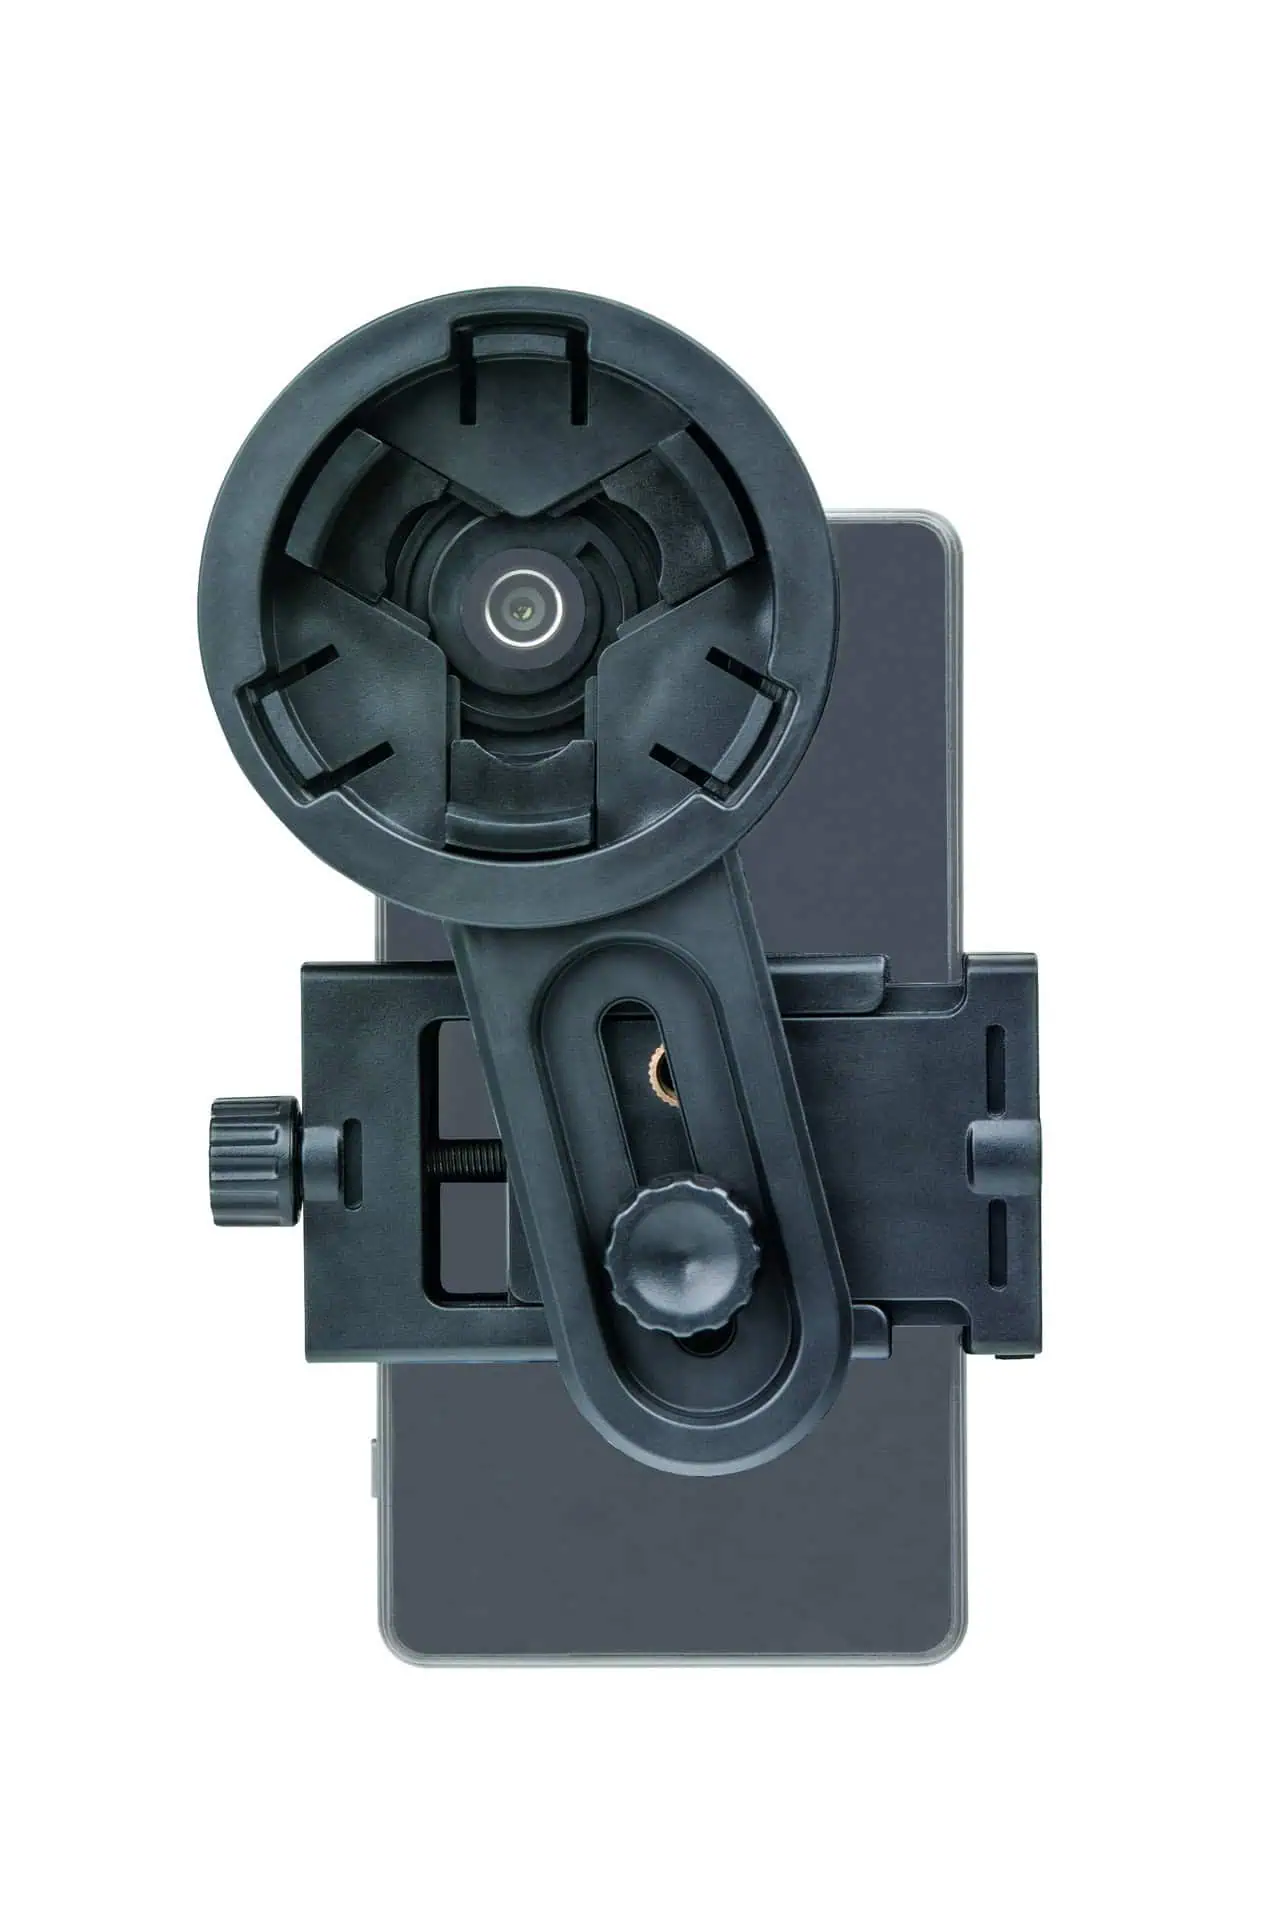 Universal fotoadapter för smartphone SA-1 för kikarsikten